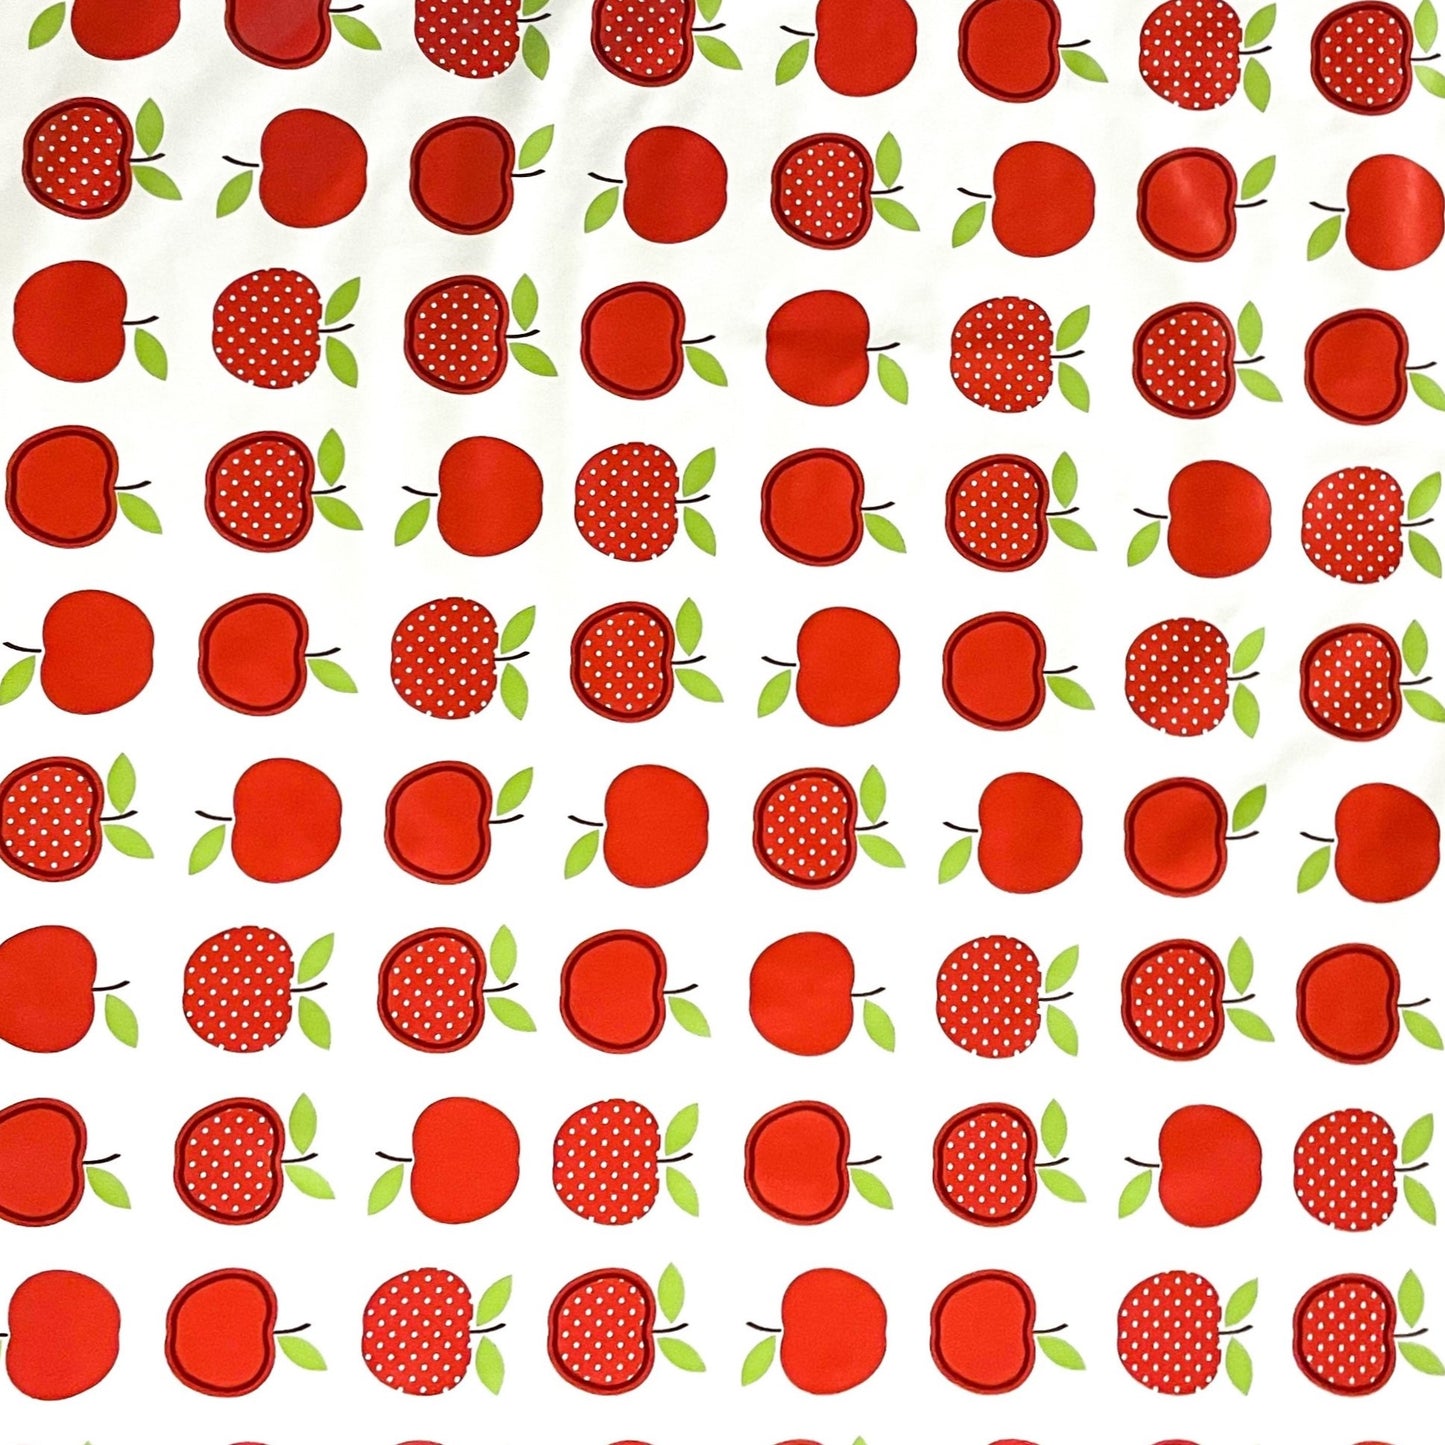 KEVKUS Wachstuch Tischdecke 06023-02 rote Äpfel Obst wählbar in eckig, rund und oval -